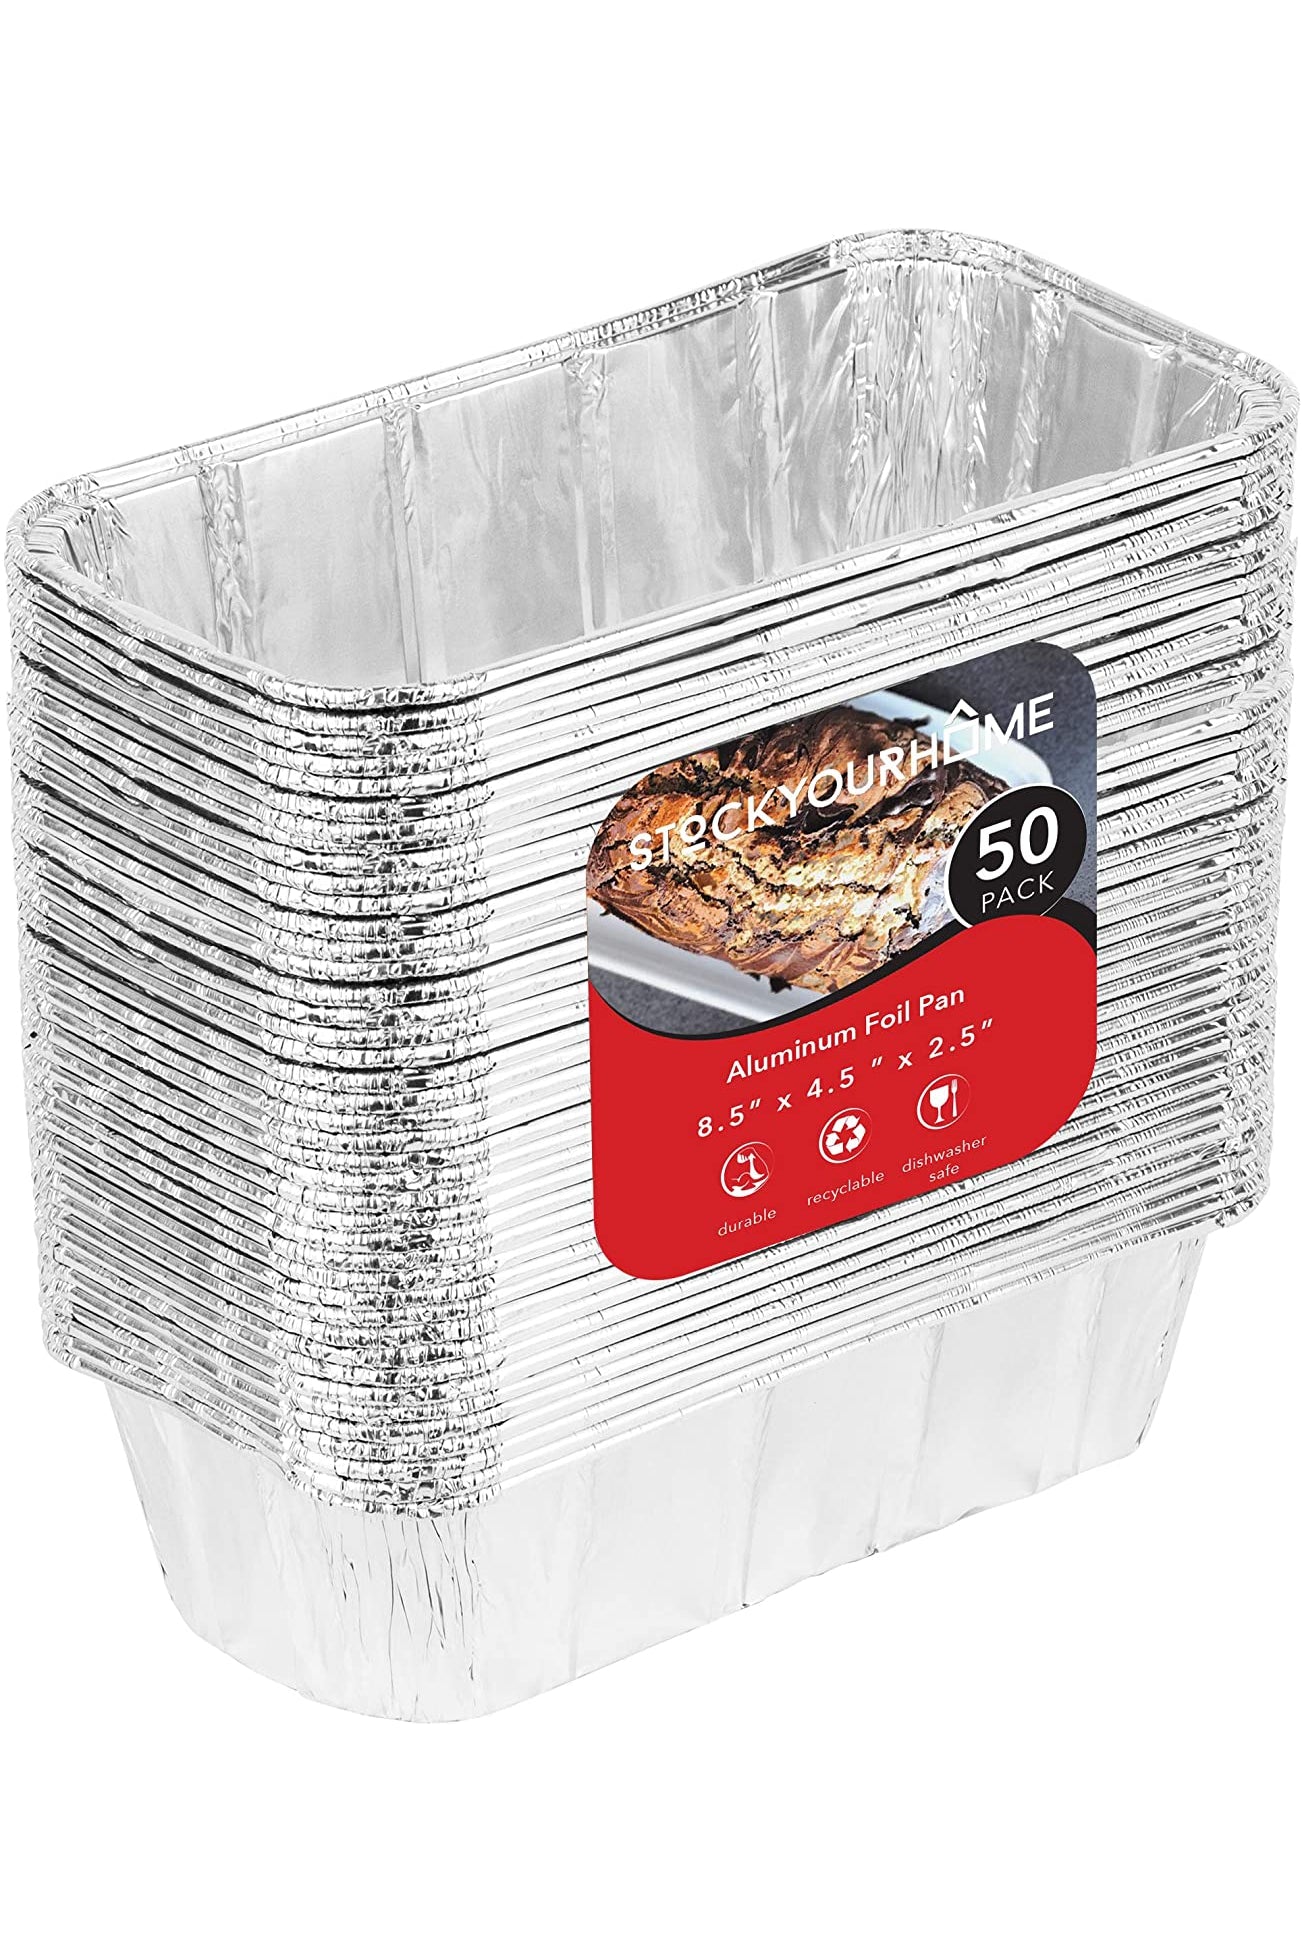 Tupperware Dishwasher Safe Loaf Pans